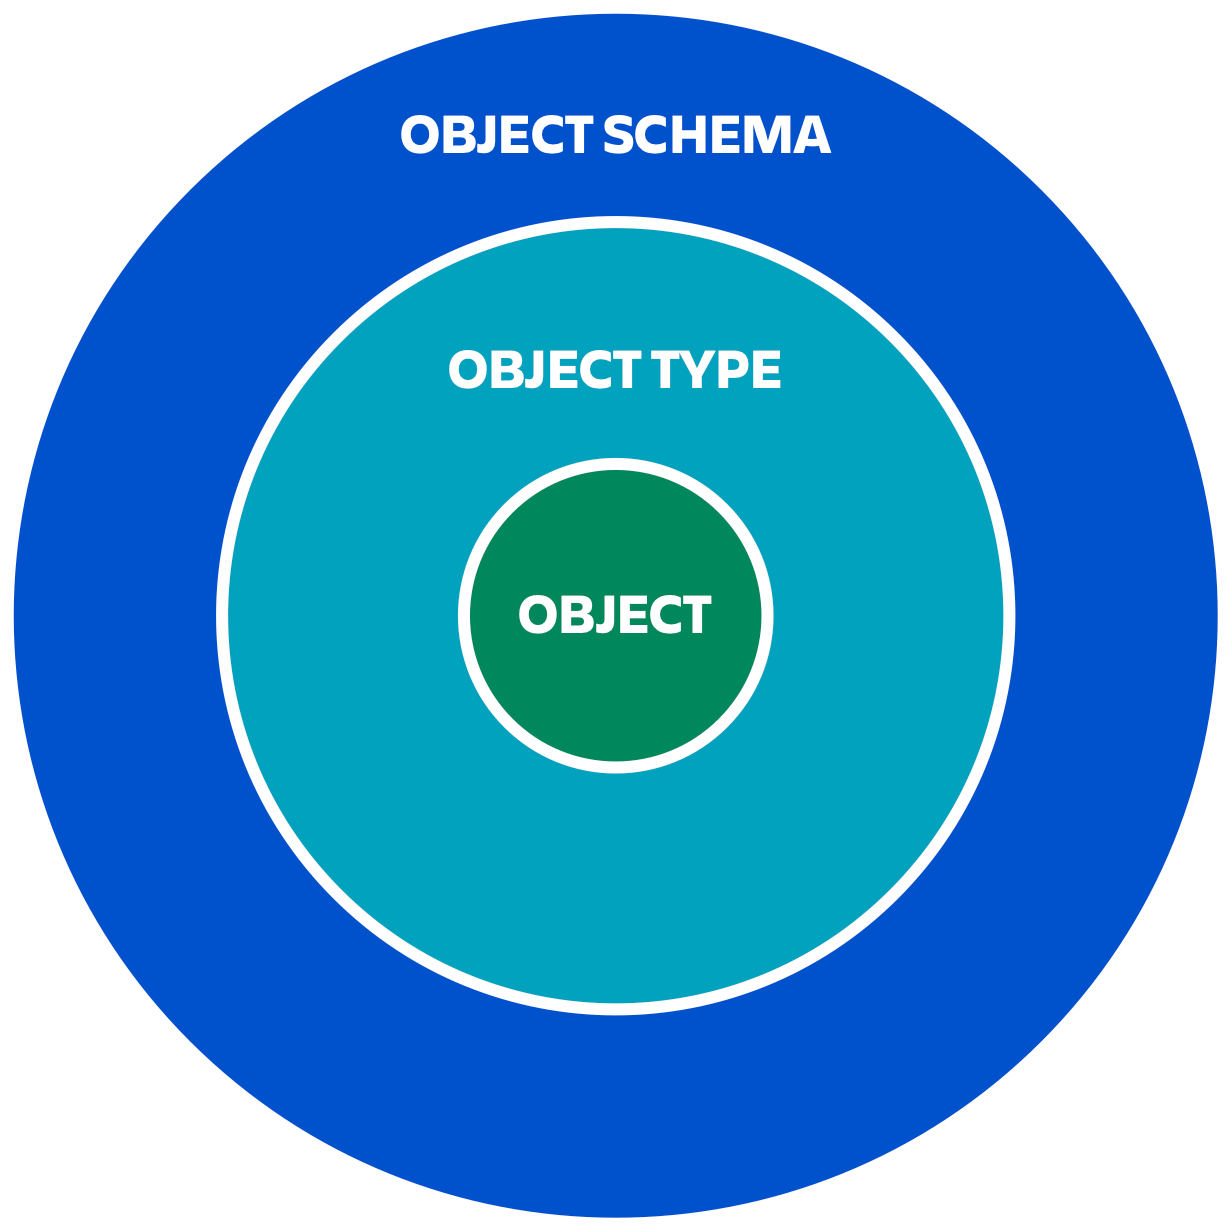 Diagram z obiektem w środku, jeden poziom wyżej znajduje się typ obiektu, a na najwyższym poziomie widoczny jest schemat obiektów